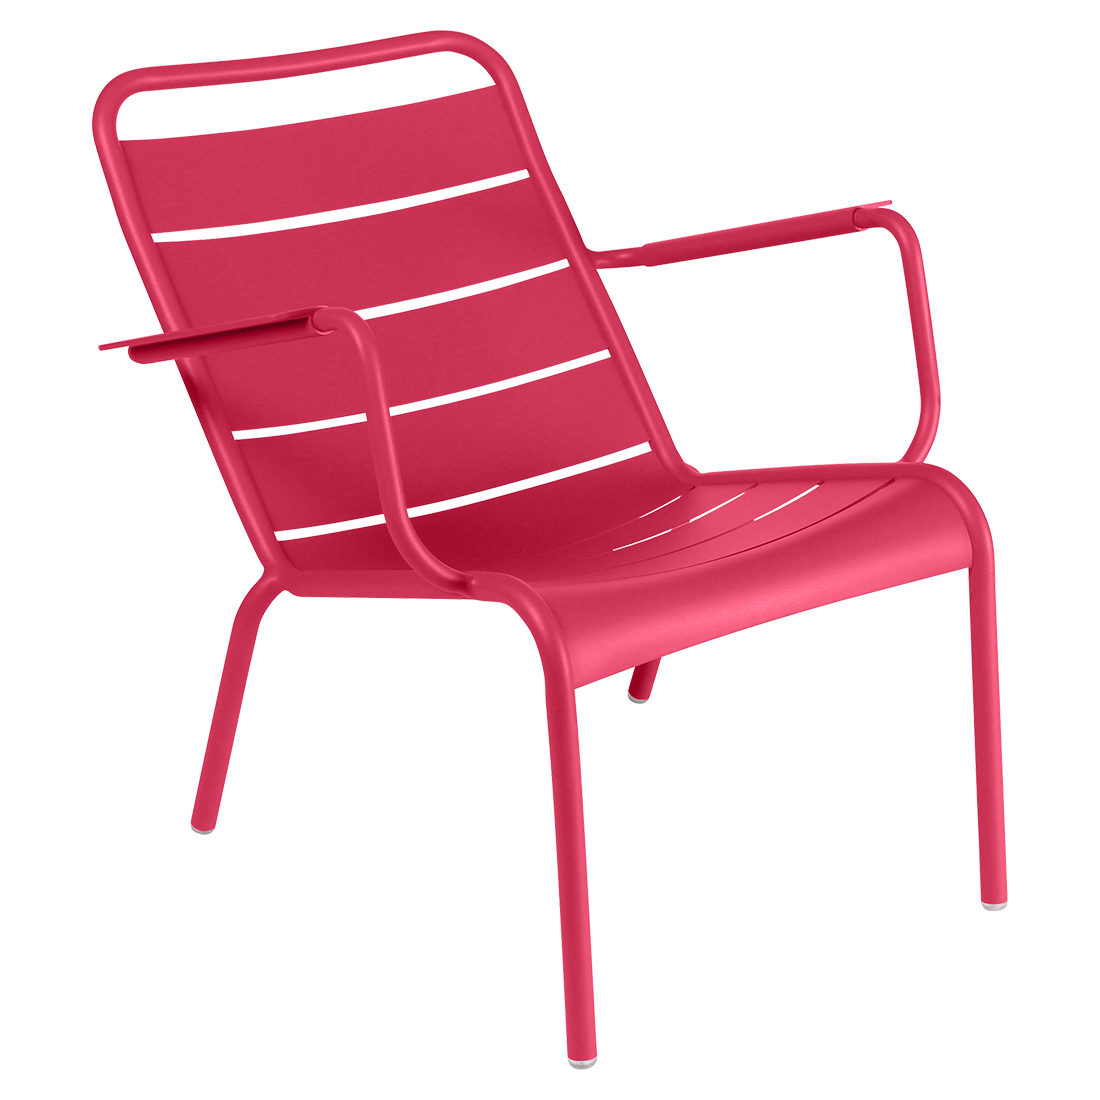 fauteuil de jardin, fauteuil metal, salon de jardin, fauteuil luxembourg, fauteuil fermob, fauteuil rose